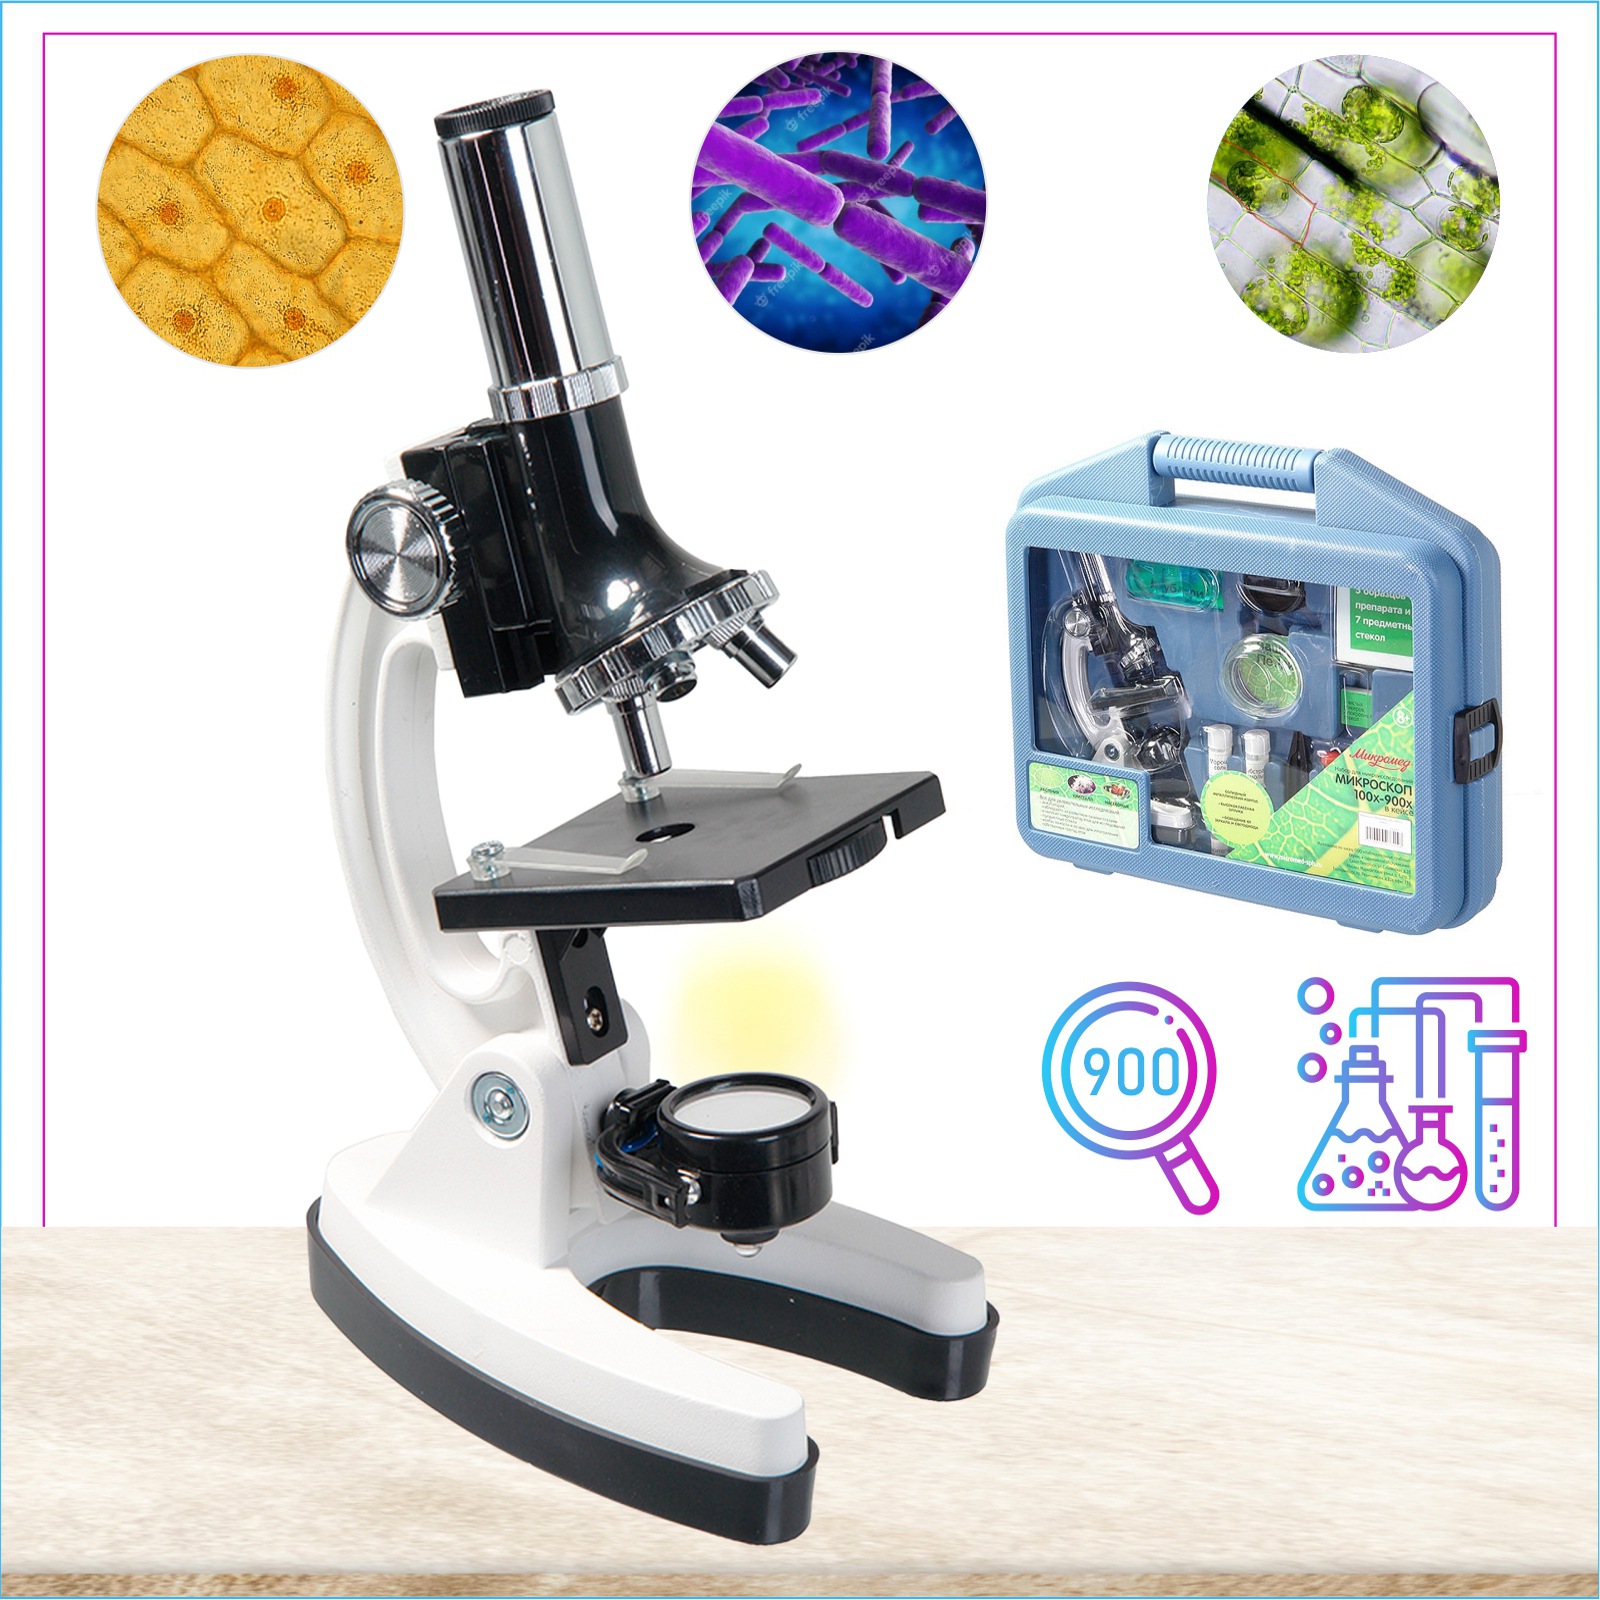 Микроскоп Микромед 100х-900х в кейсе с препаратами и инструментами 52 предмета - фото 7